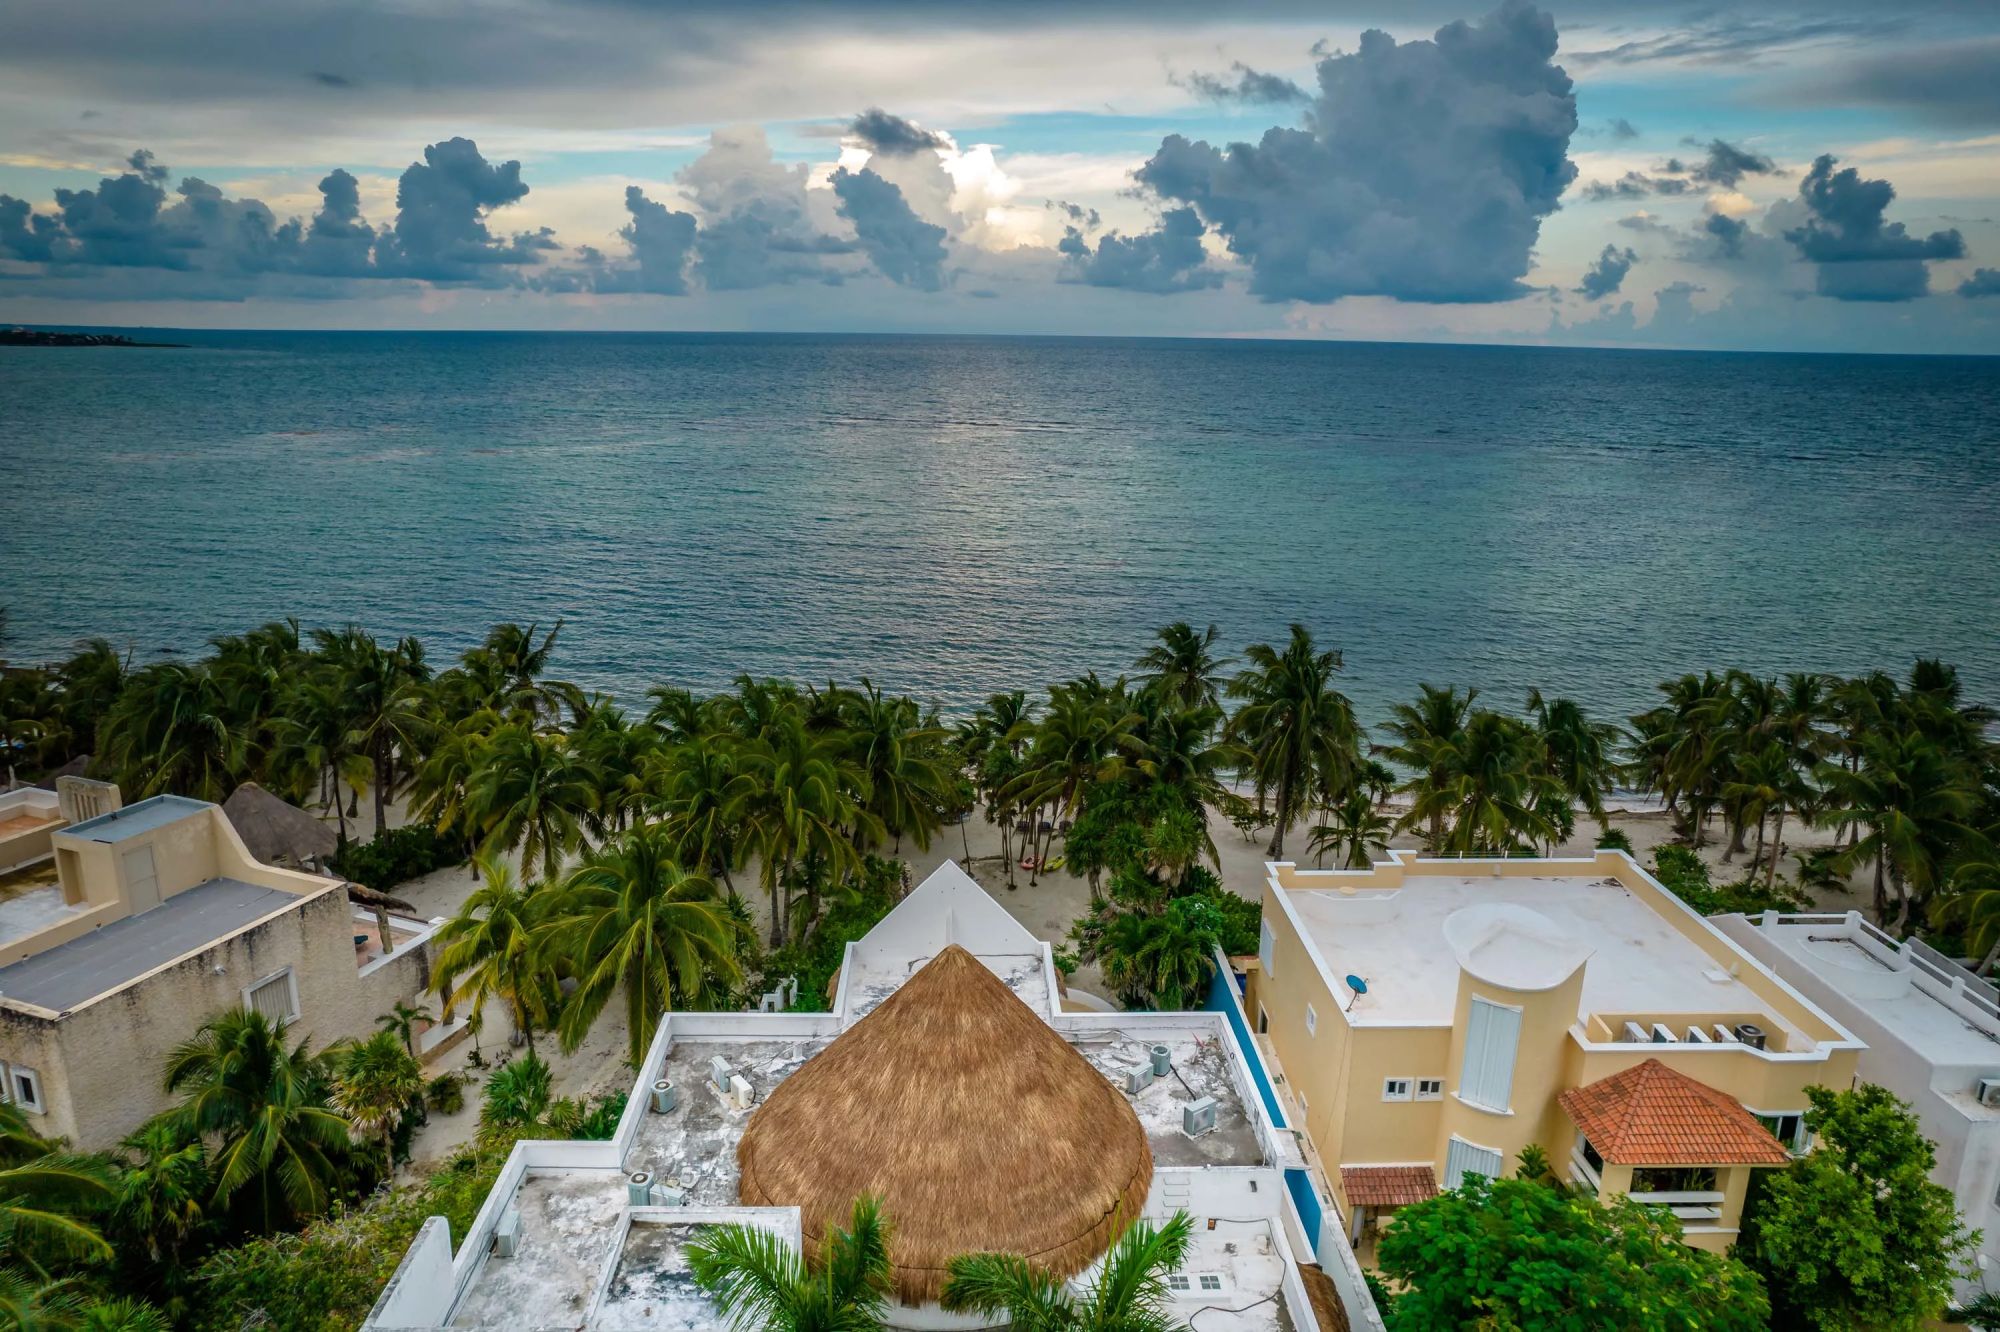 Villa mexicaine bordée de palmiers vous emmène sur votre plage de sable blanc - Mexique